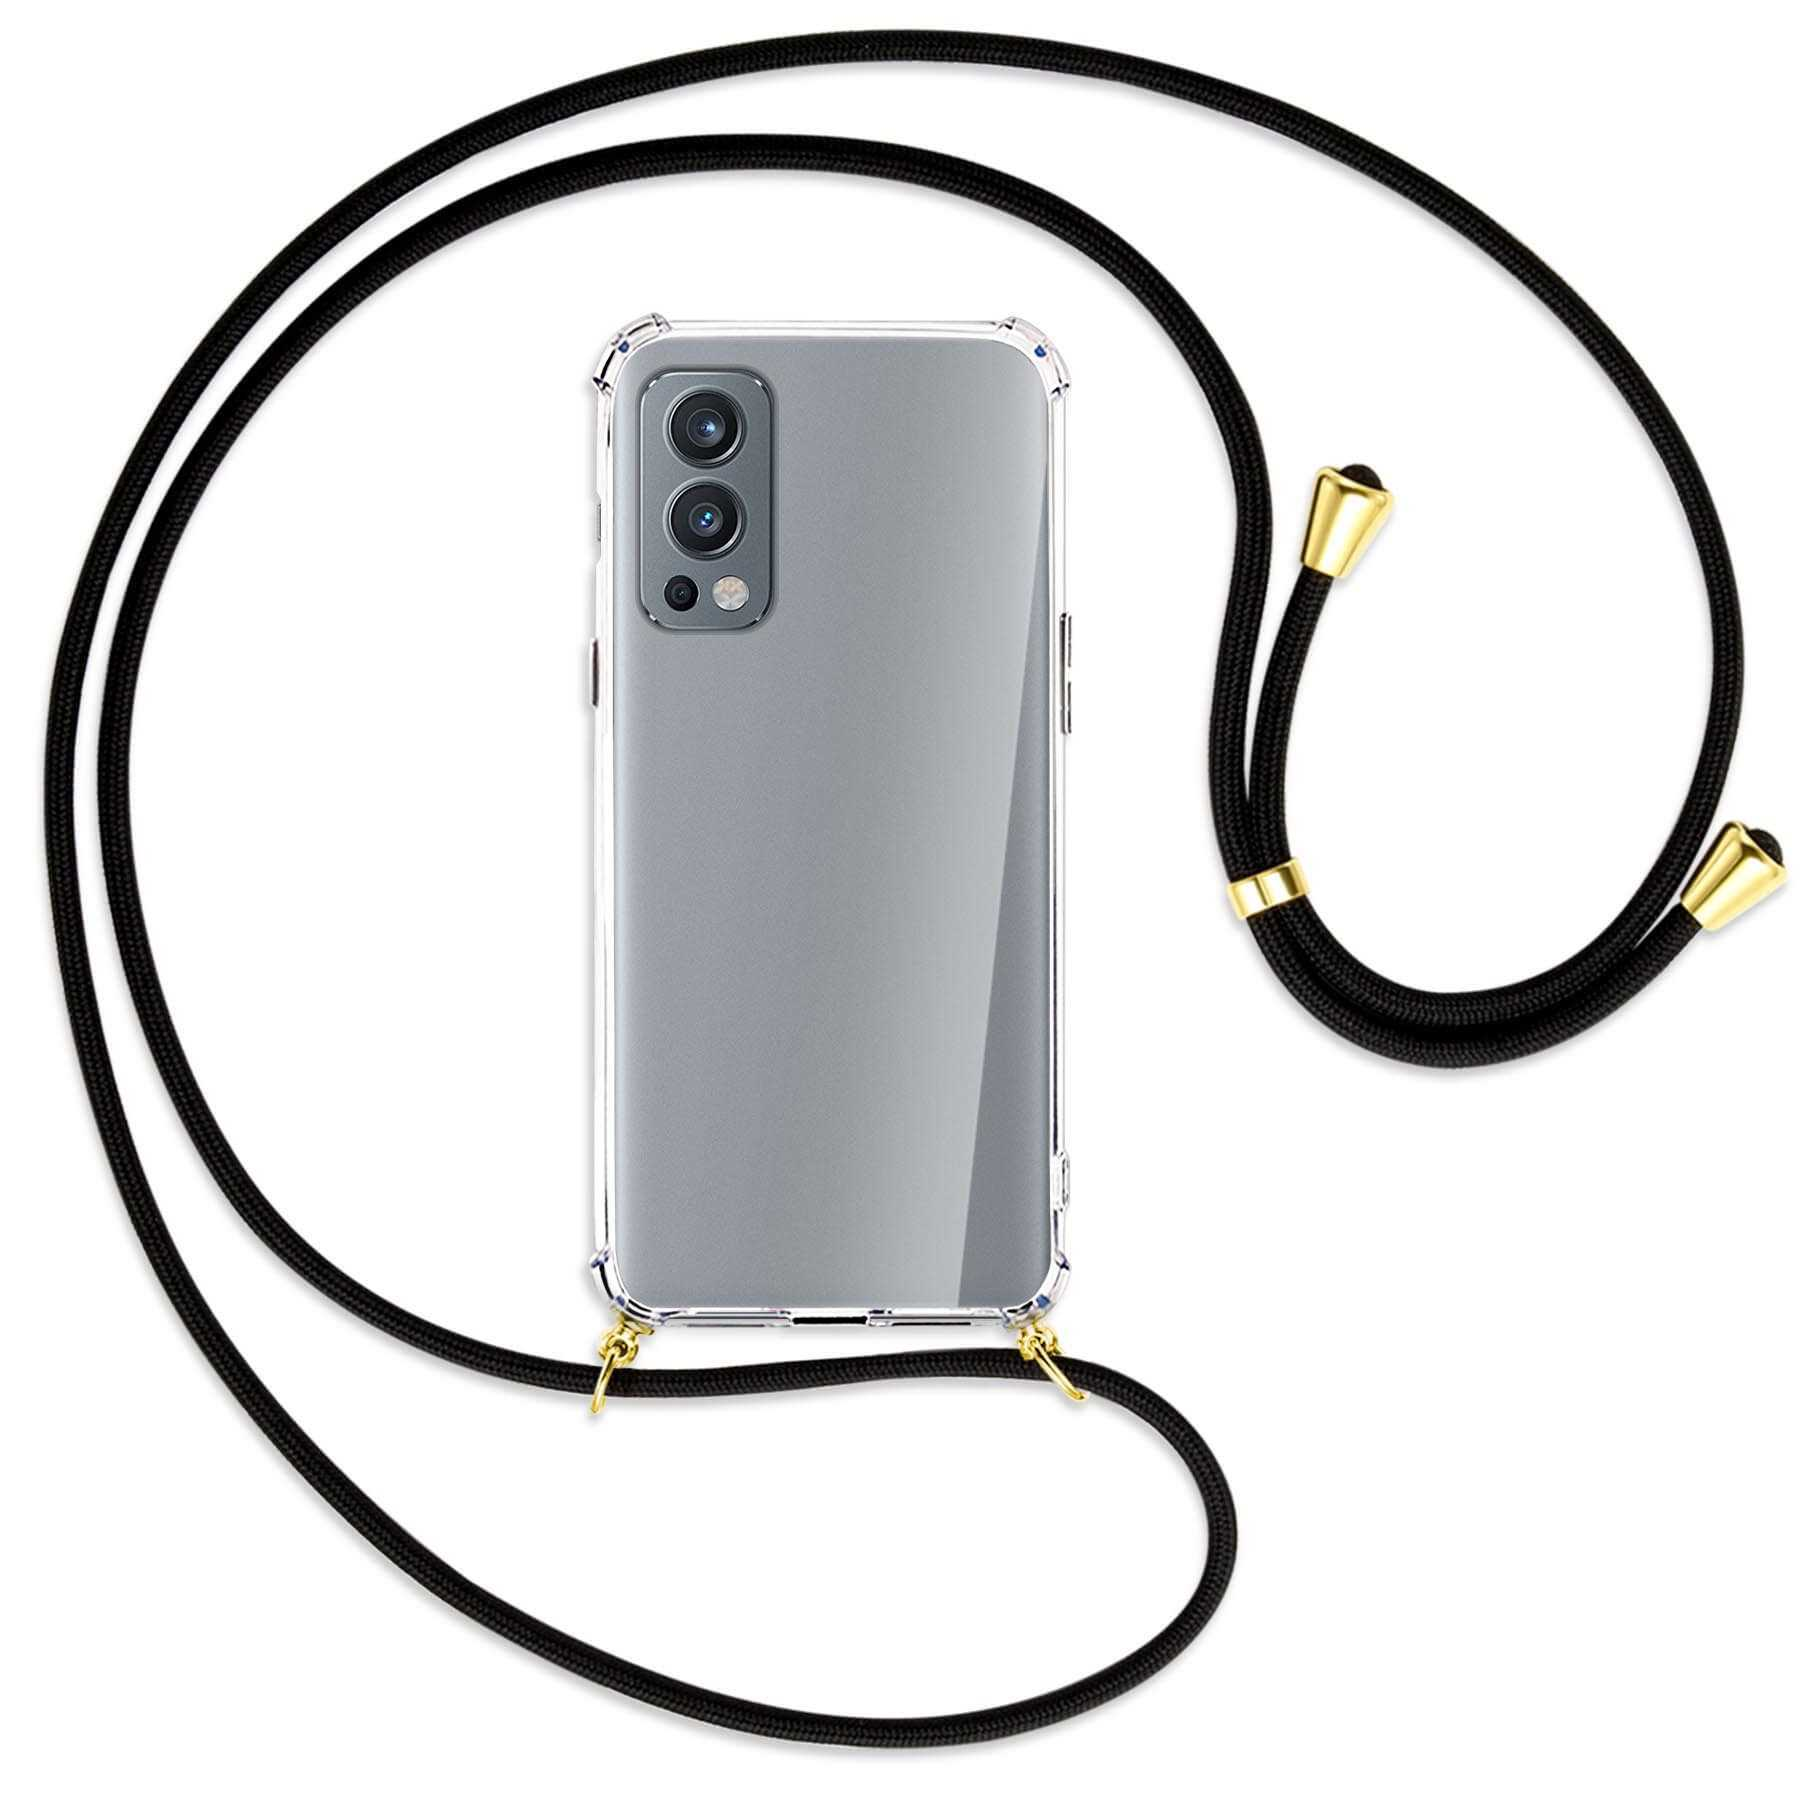 Nord2 Umhänge-Hülle Gold MTB OnePlus, 5G, mit MORE Kordel, ENERGY Schwarz Backcover, /